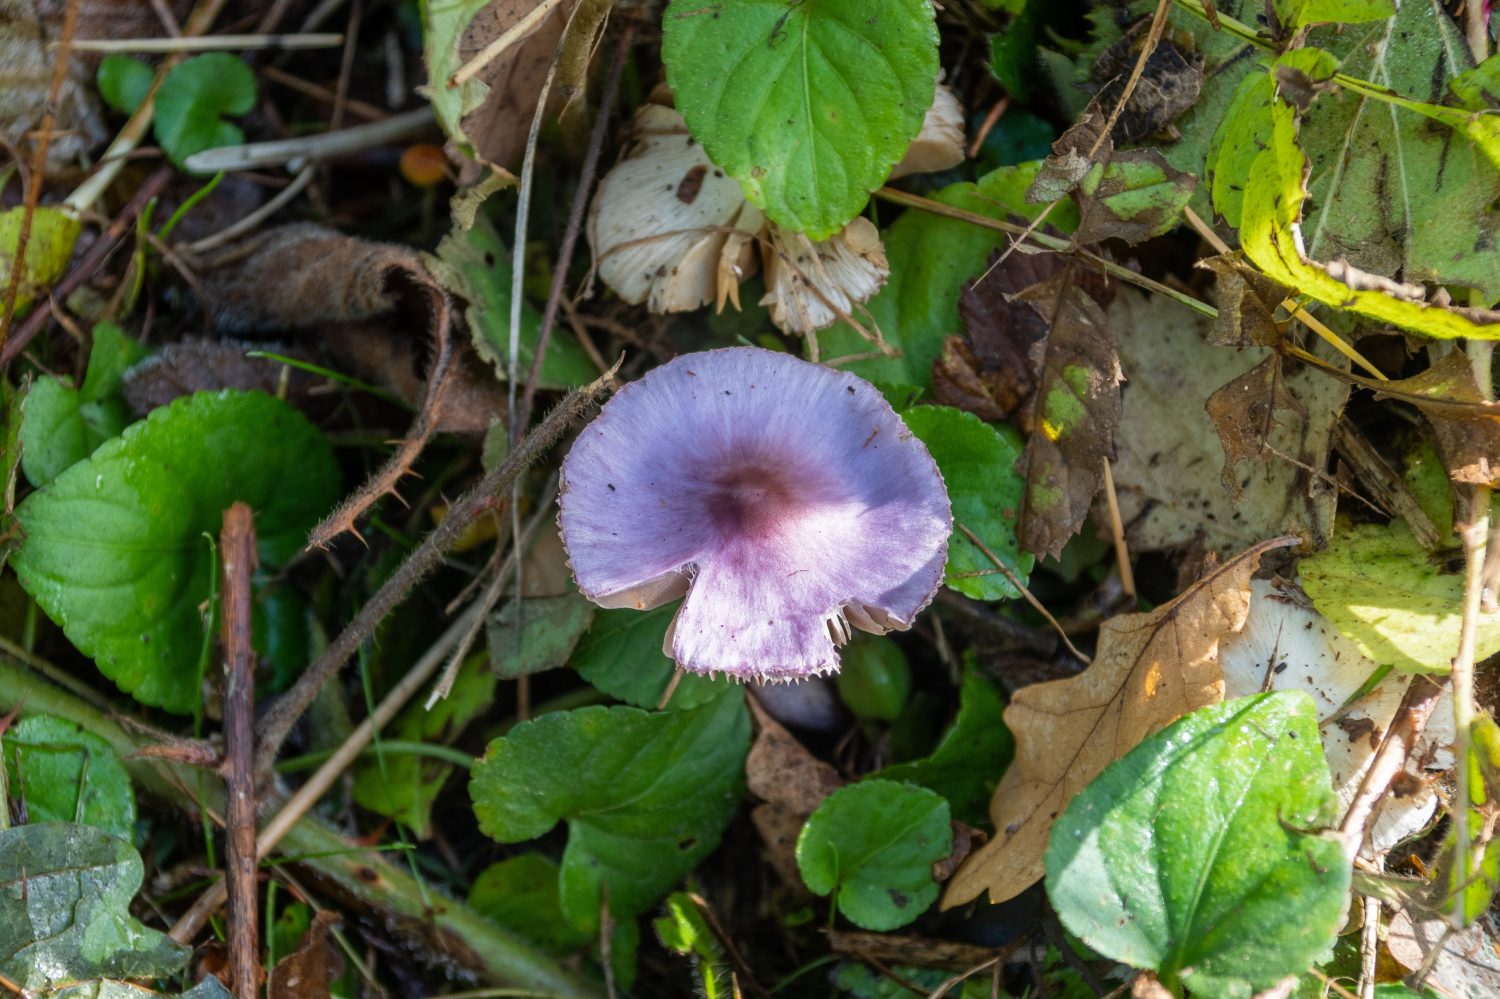 Un fungo velenoso lilla in fibra, Inocybe geophylla var.  lilacina, che mostra la sua colorazione viola brillante sul suolo del bosco